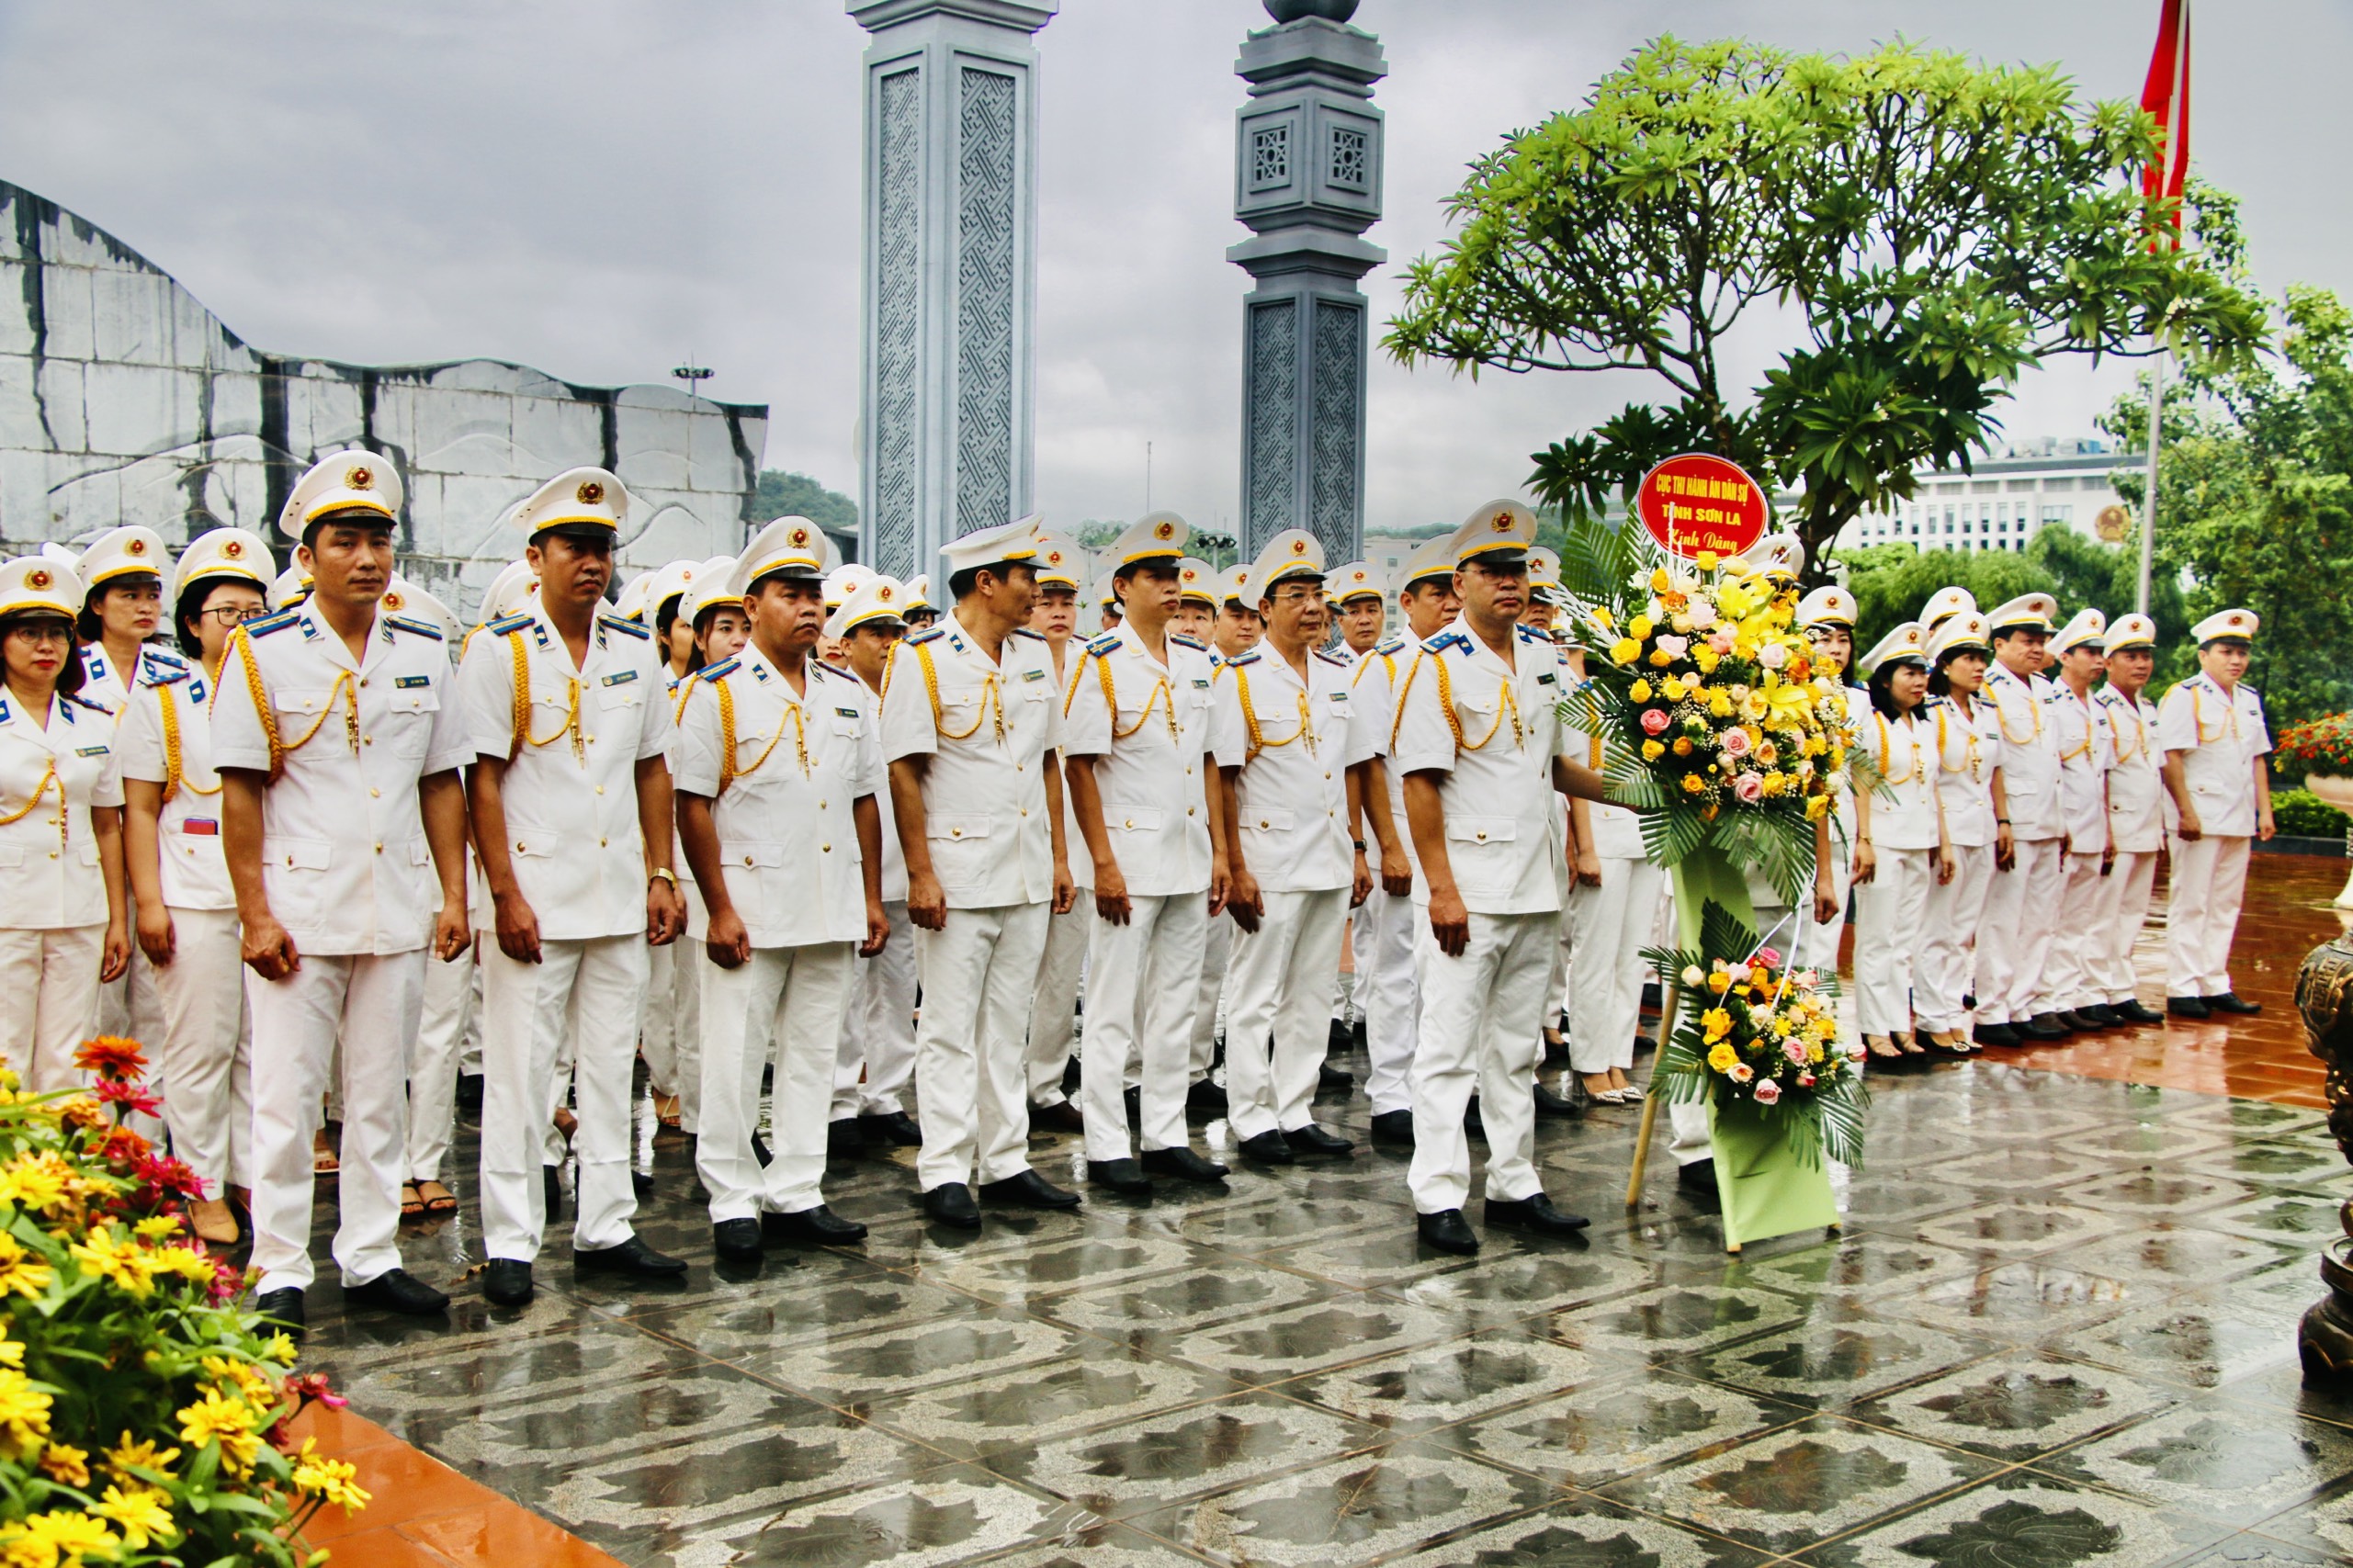 Cục THADS tỉnh Sơn la tổ chức các hoạt động kỷ niệm 77 năm ngày truyền thống THADS (19/7/1946-19/7/2023); 30 năm chuyển giao công tác THADS ( 1993-2023) 7